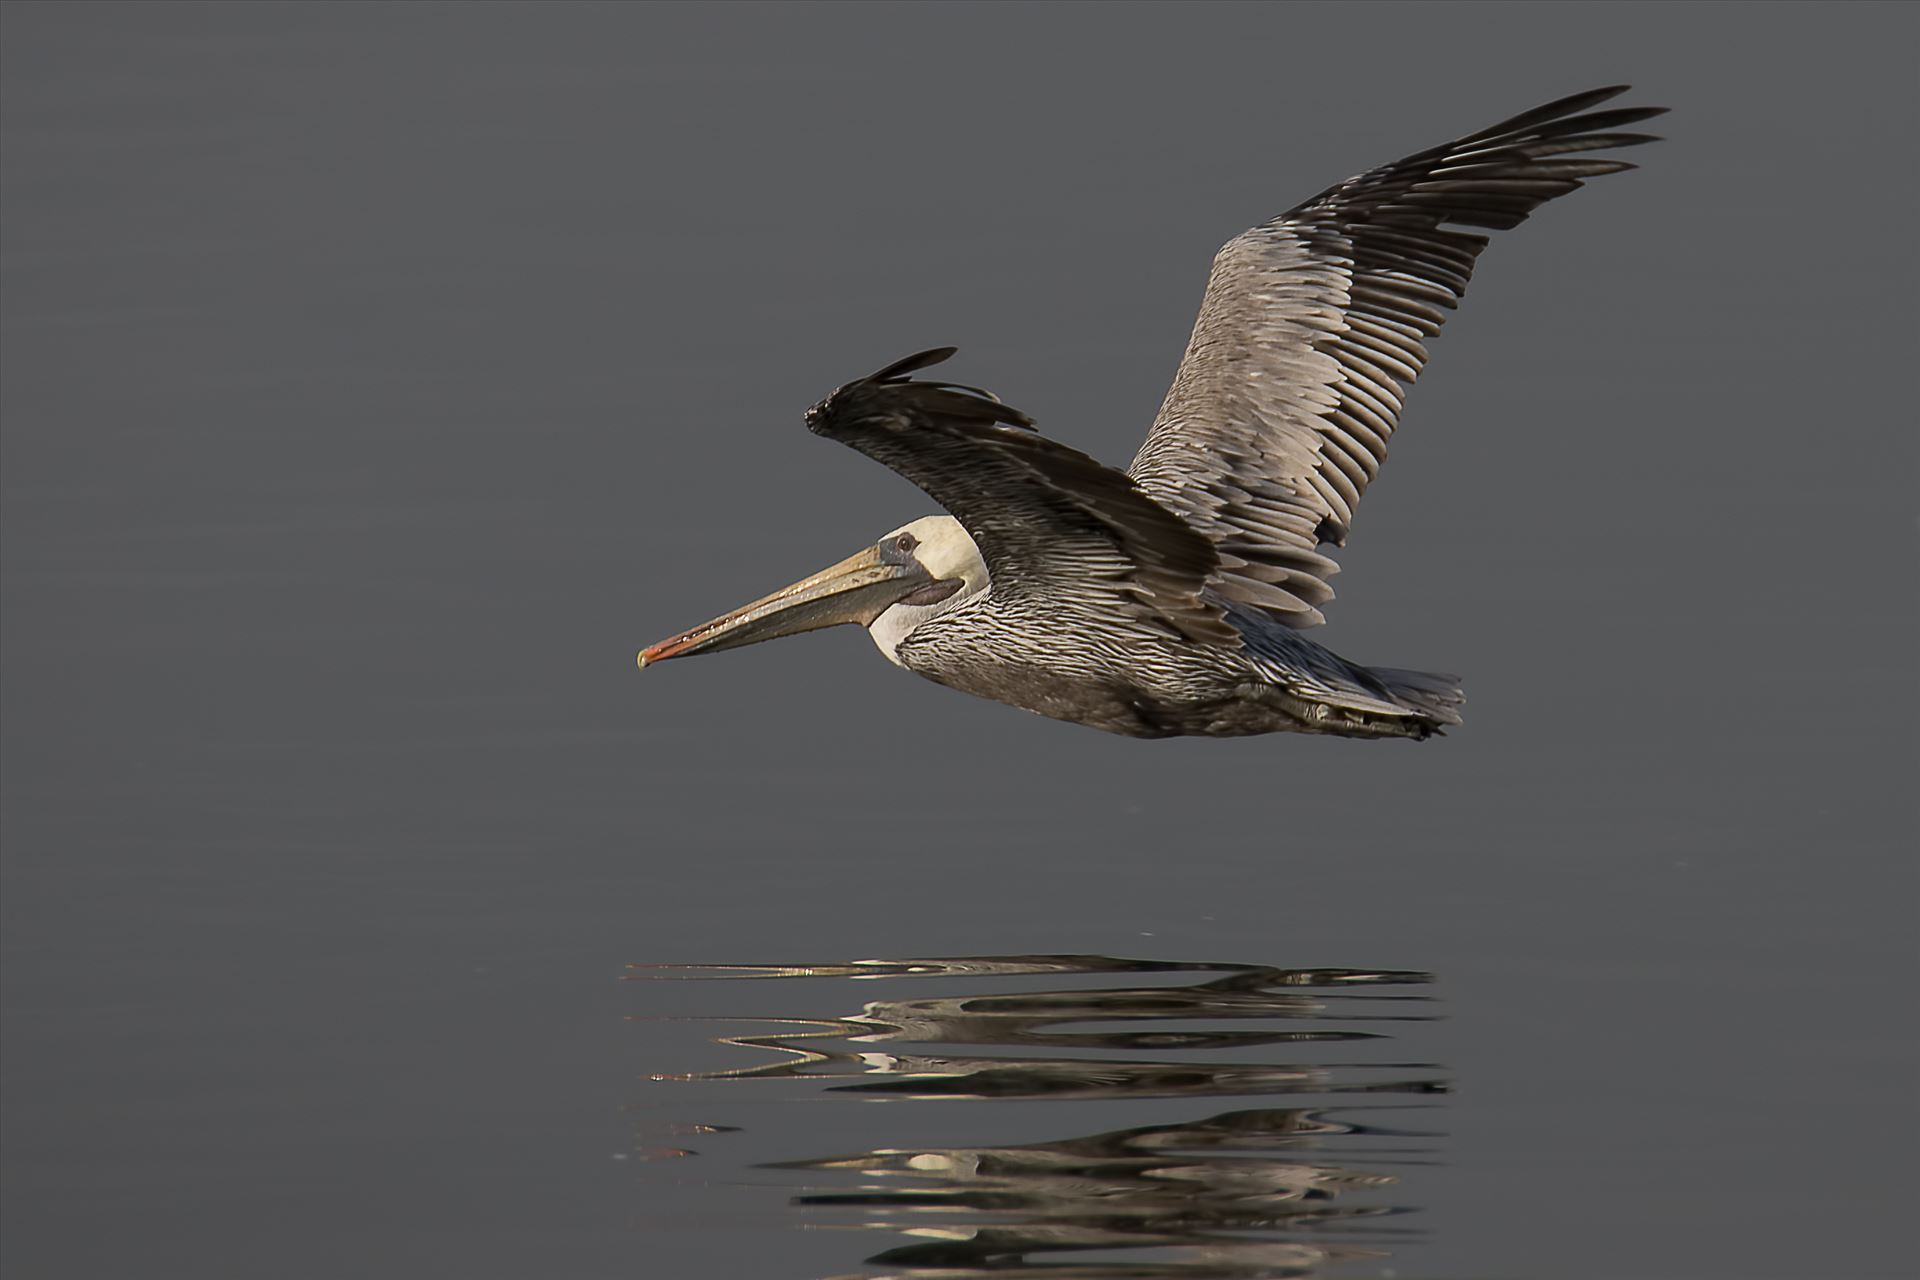 Glide - Brown pelican in flight by Denise Buckley Crawford